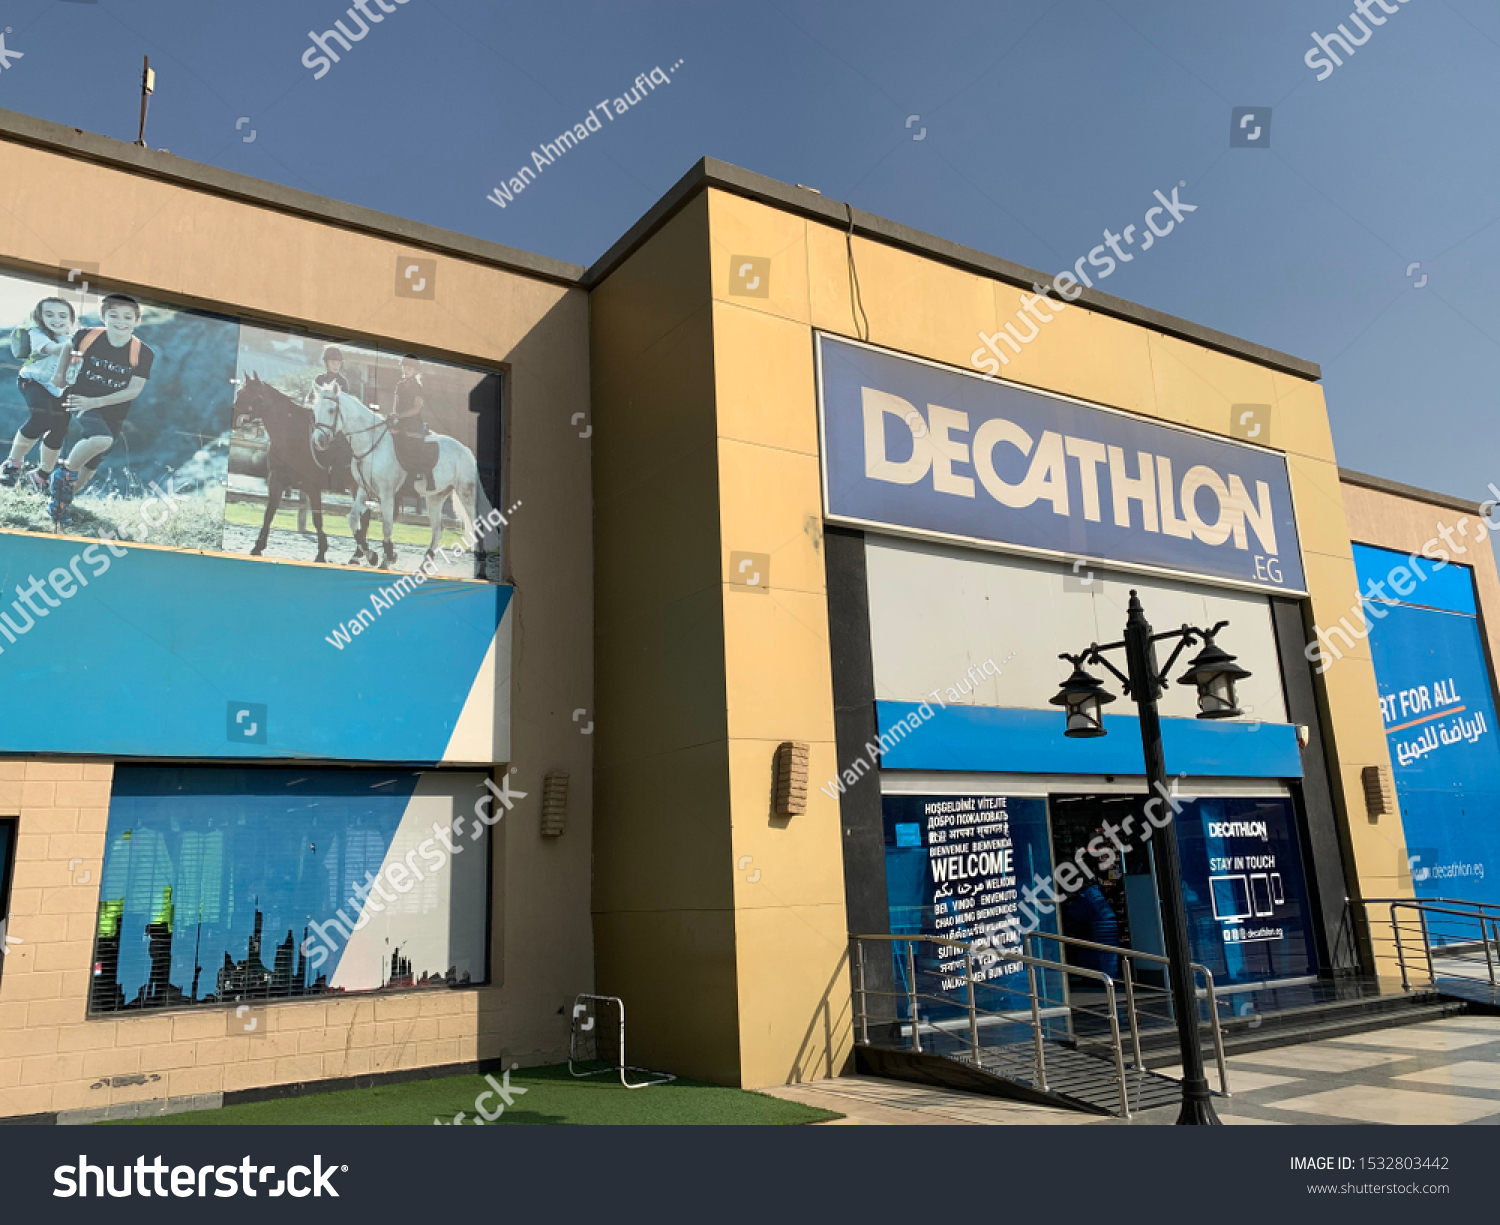 decathlon egypt